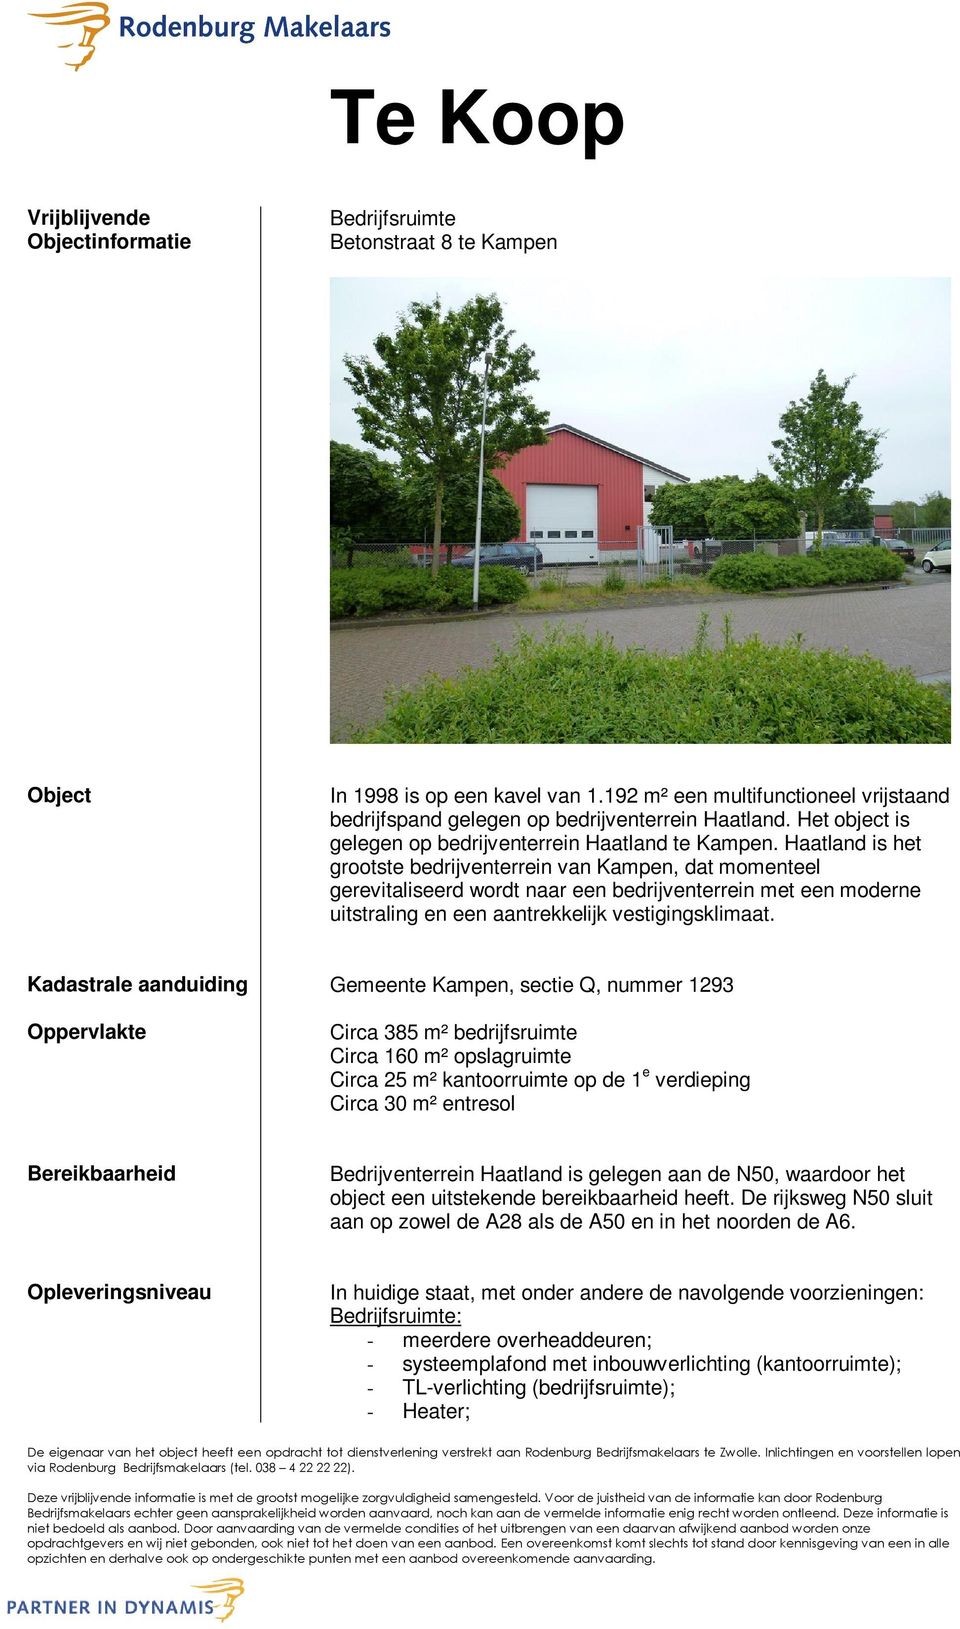 Haatland is het grootste bedrijventerrein van Kampen, dat momenteel gerevitaliseerd wordt naar een bedrijventerrein met een moderne uitstraling en een aantrekkelijk vestigingsklimaat.